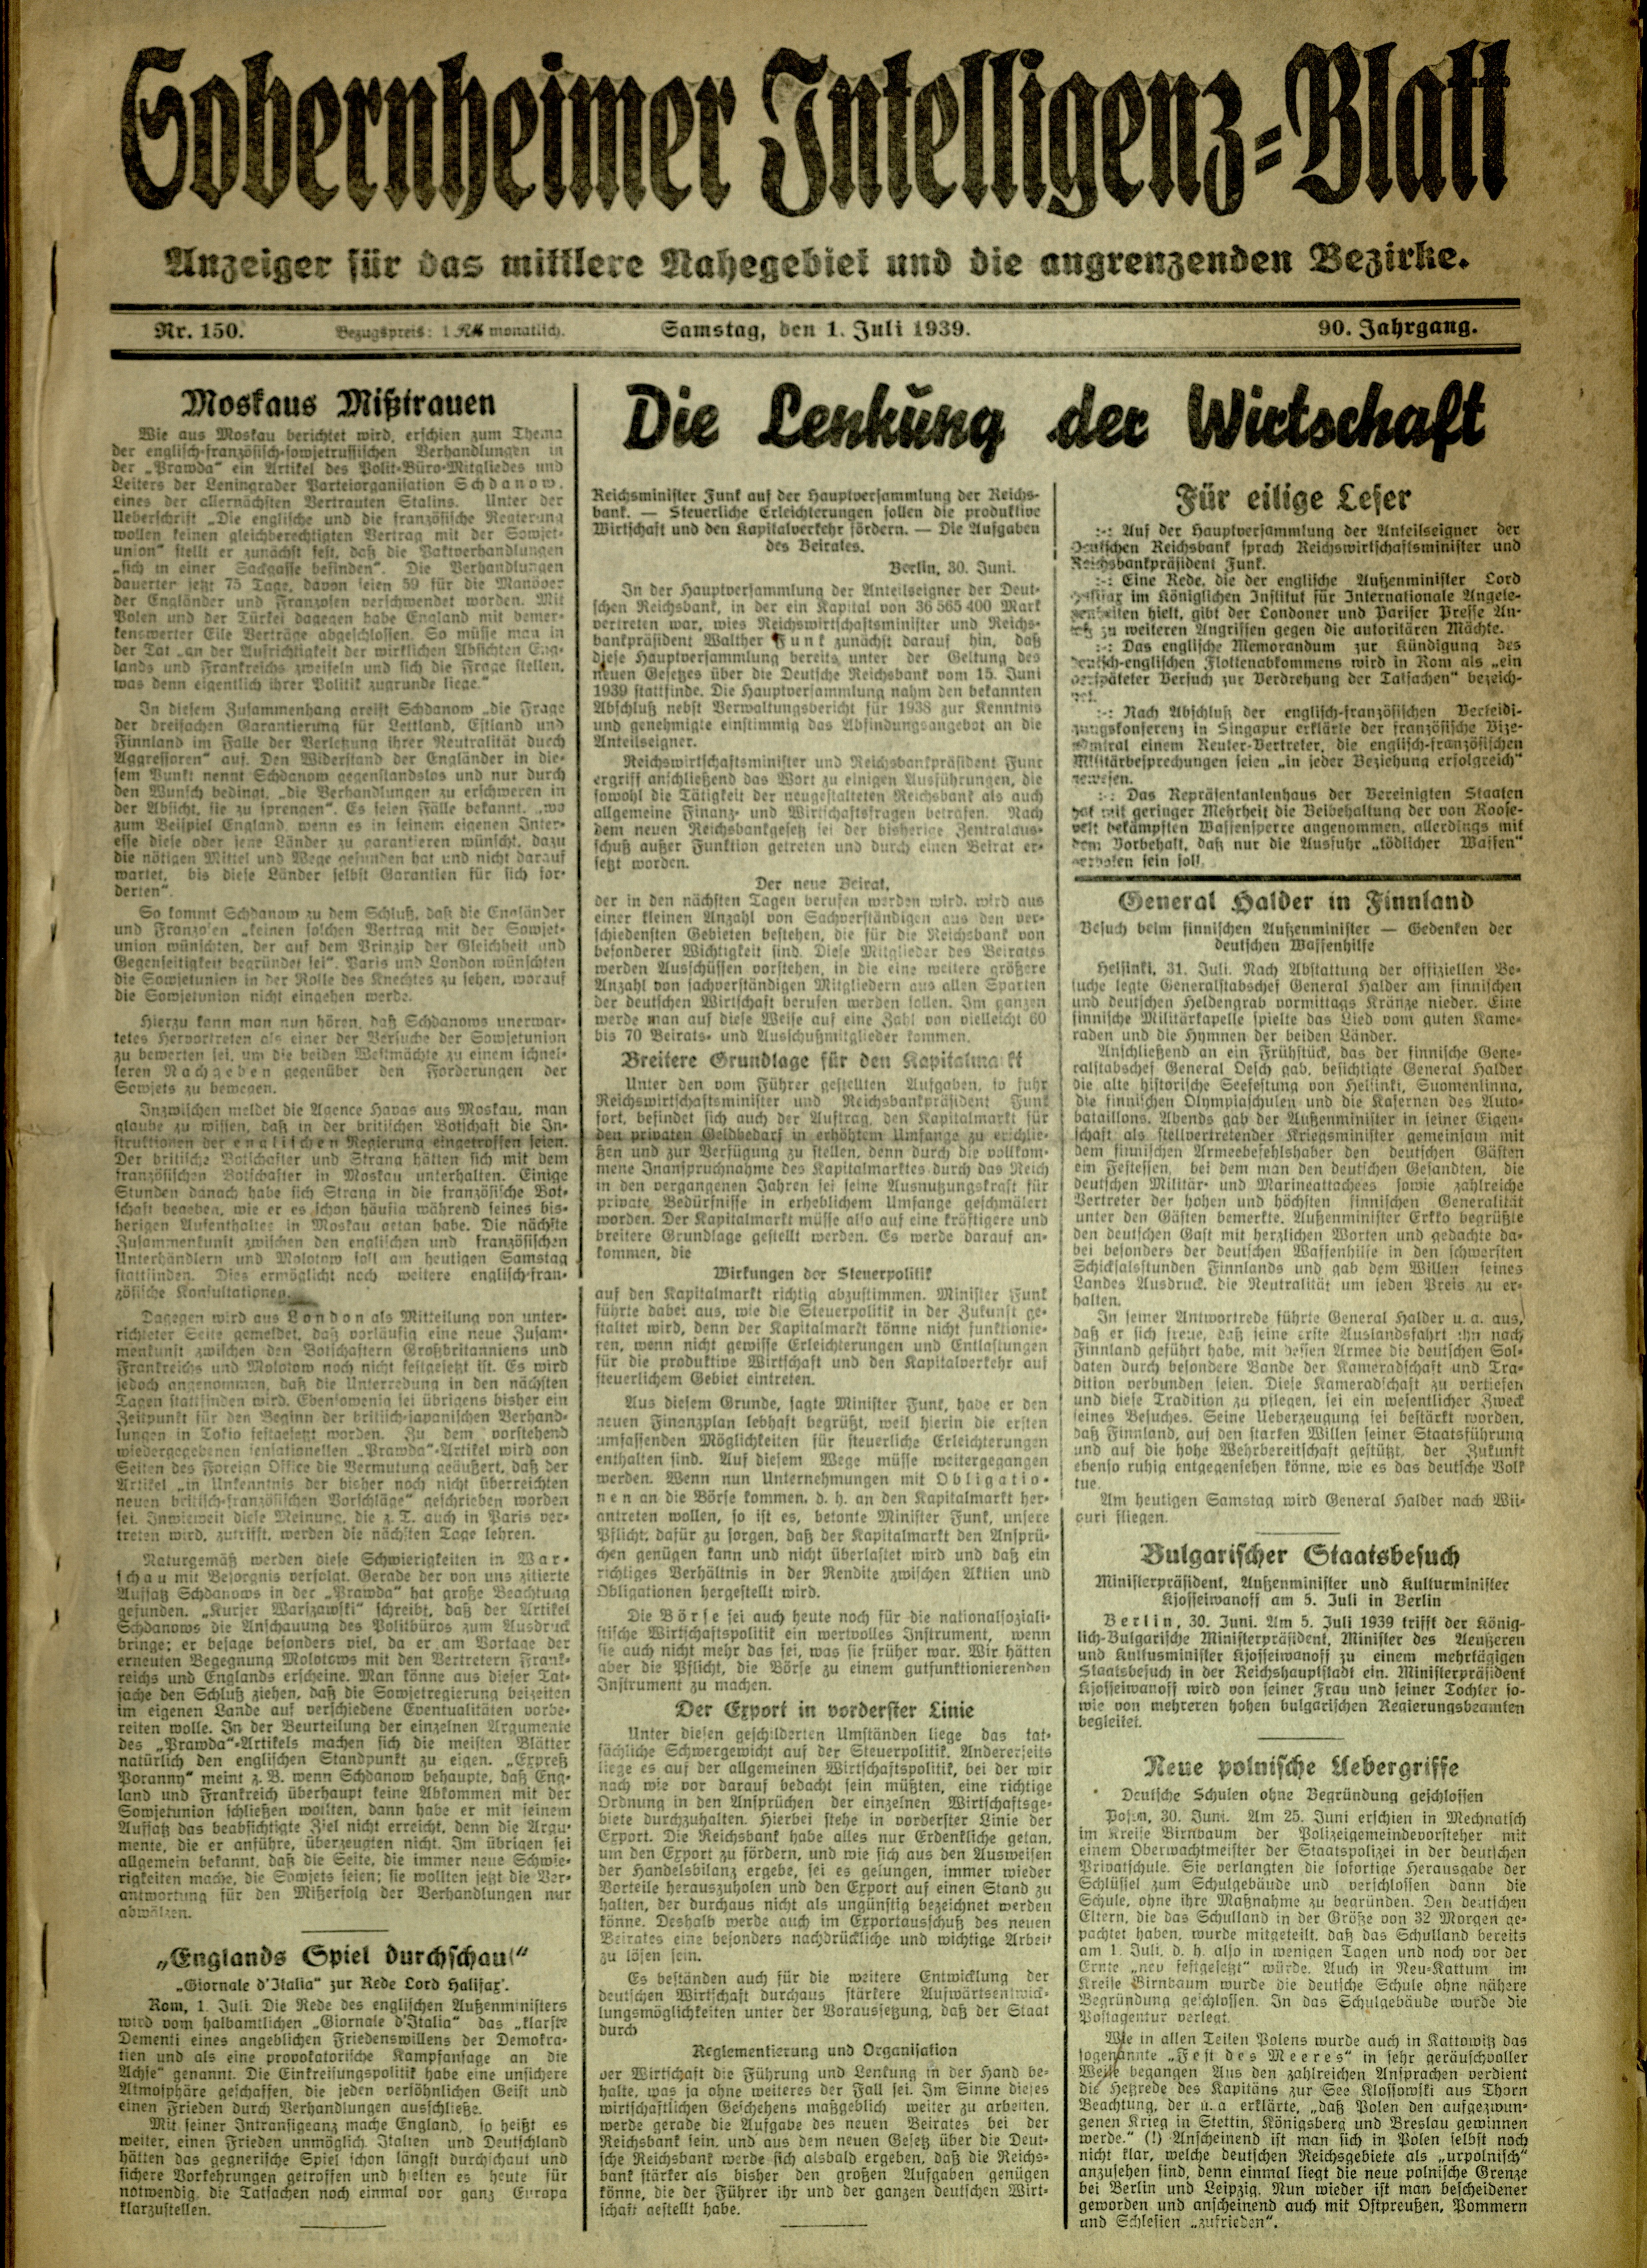 Zeitung: Sobernheimer Intelligenzblatt; Juli 1939, Jg. 90 Nr. 150 (Heimatmuseum Bad Sobernheim CC BY-NC-SA)